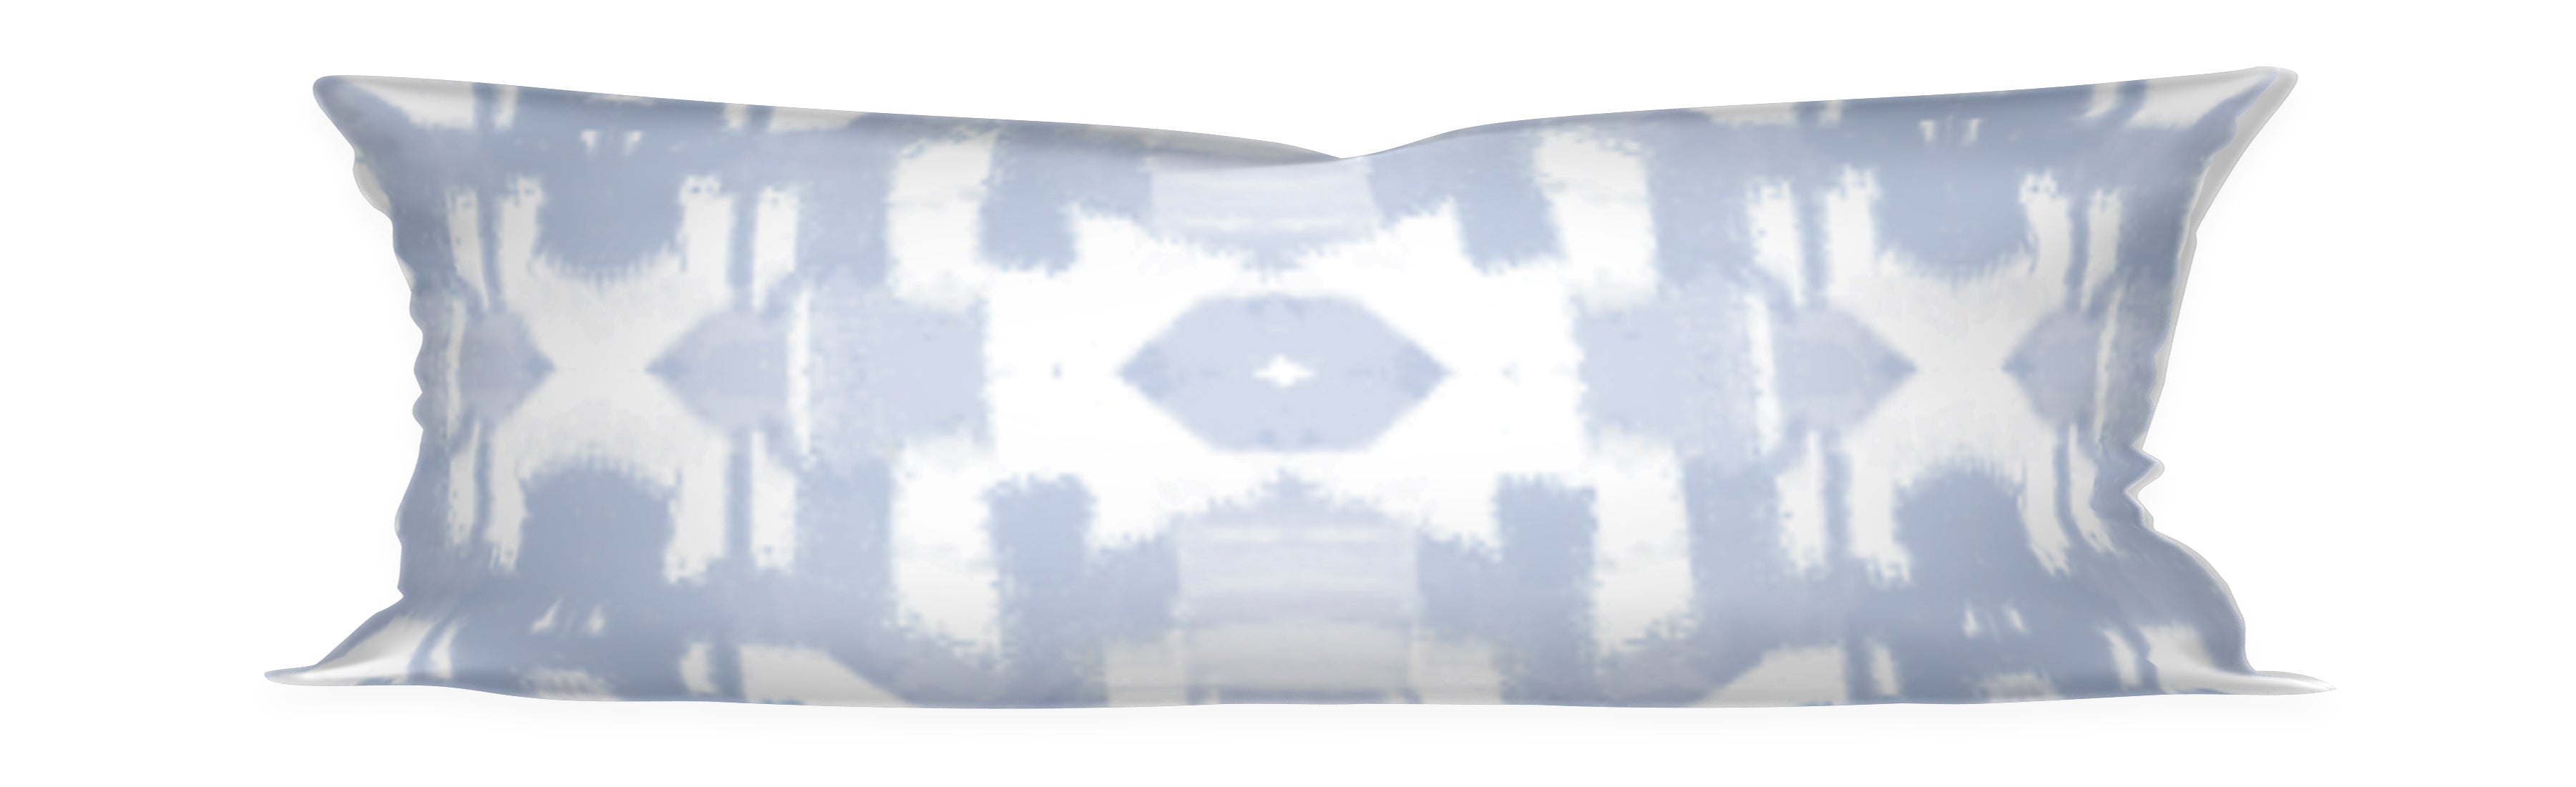 QUICK SHIP Mykonos Blue Lumbar Pillows